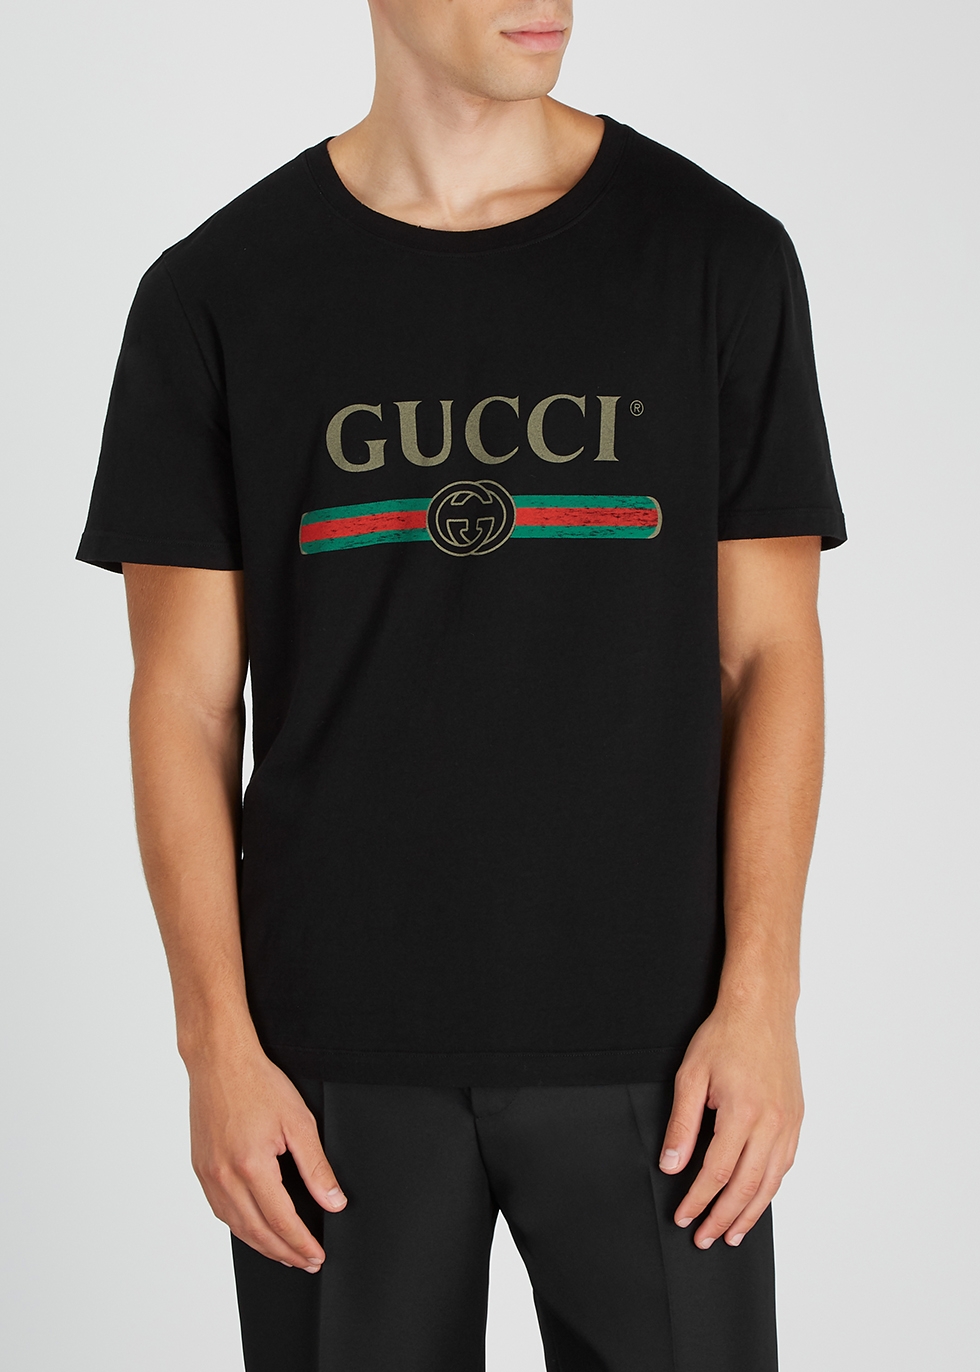 black gucci logo t shirt